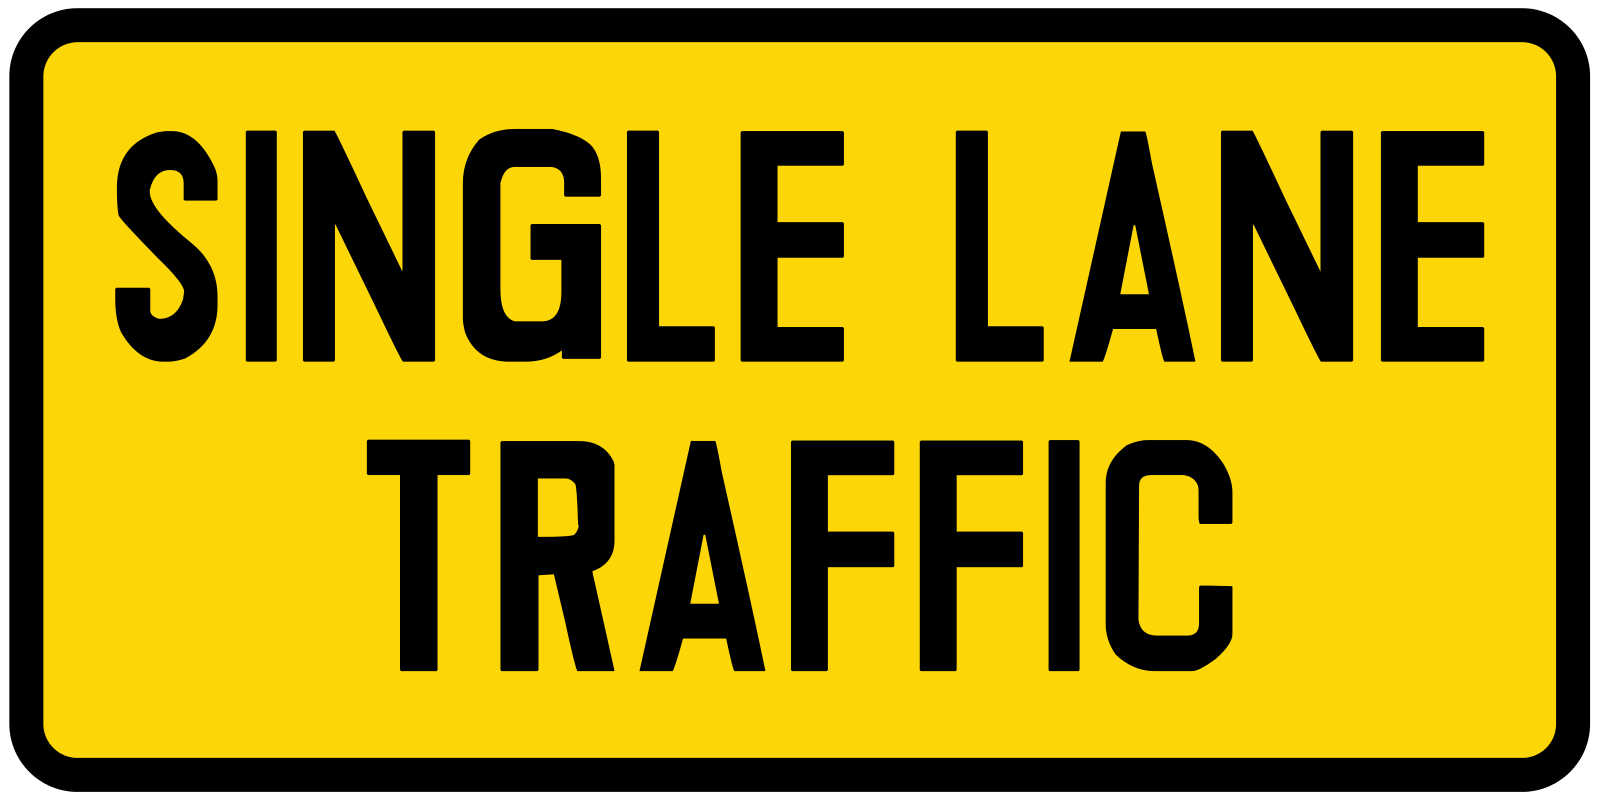 Single lane traffic